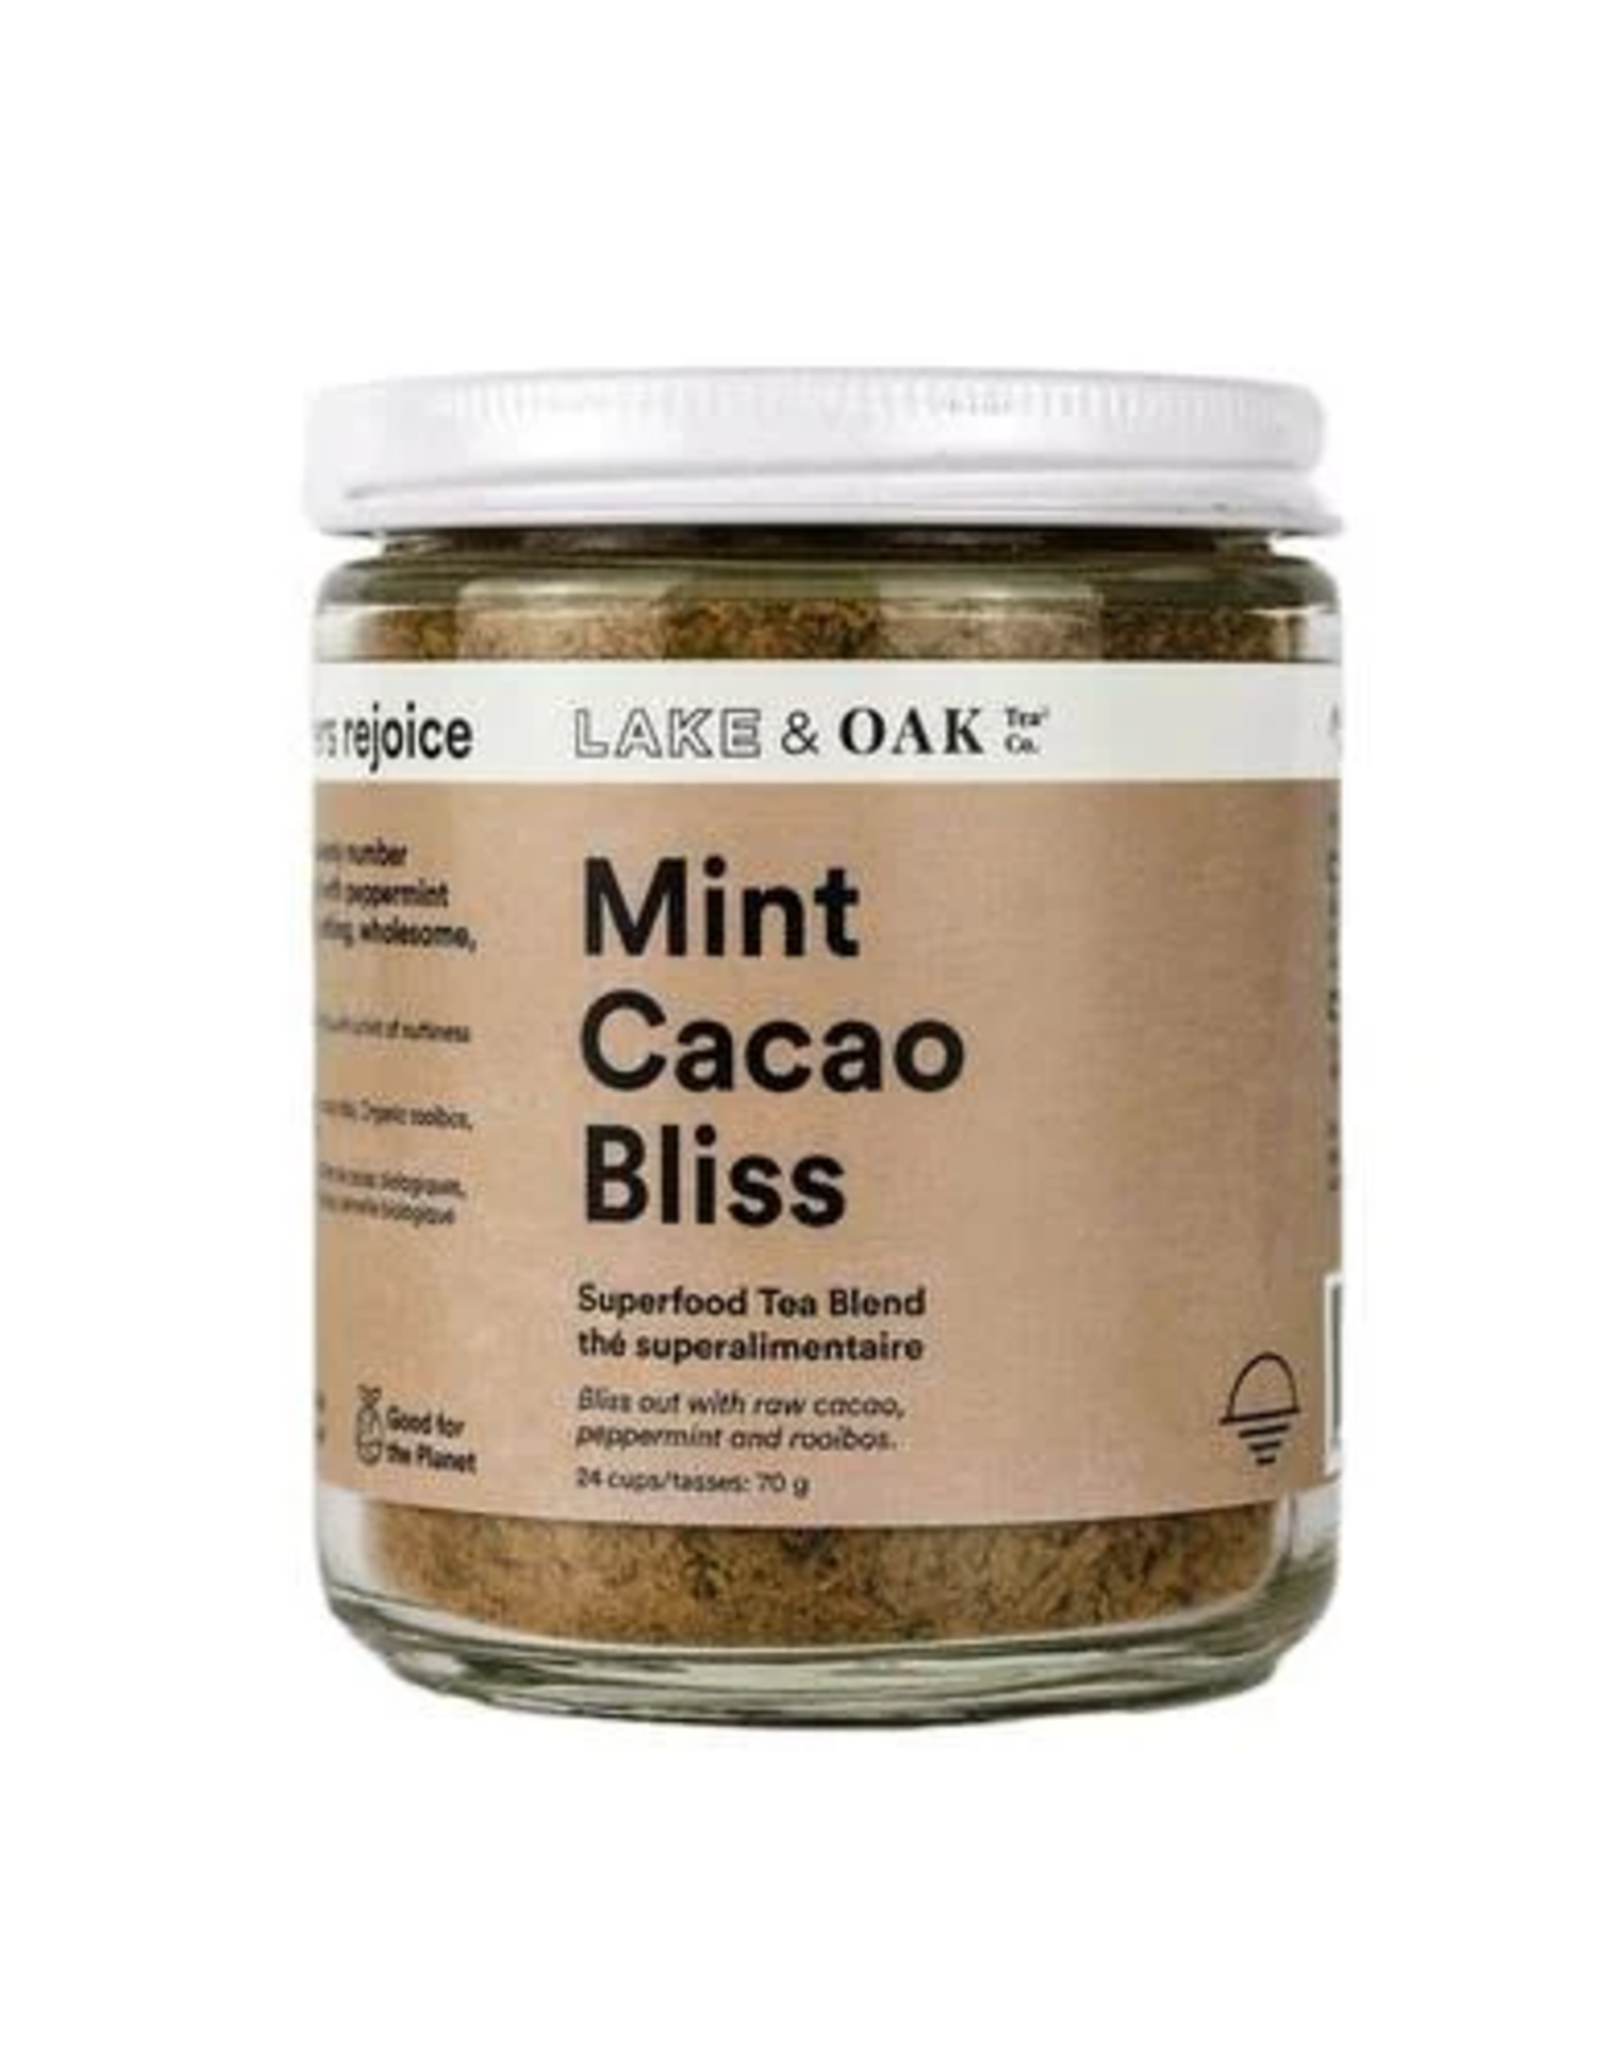 Lake & Oak Tea Co. Mint Cacao Bliss - Superfood Tea